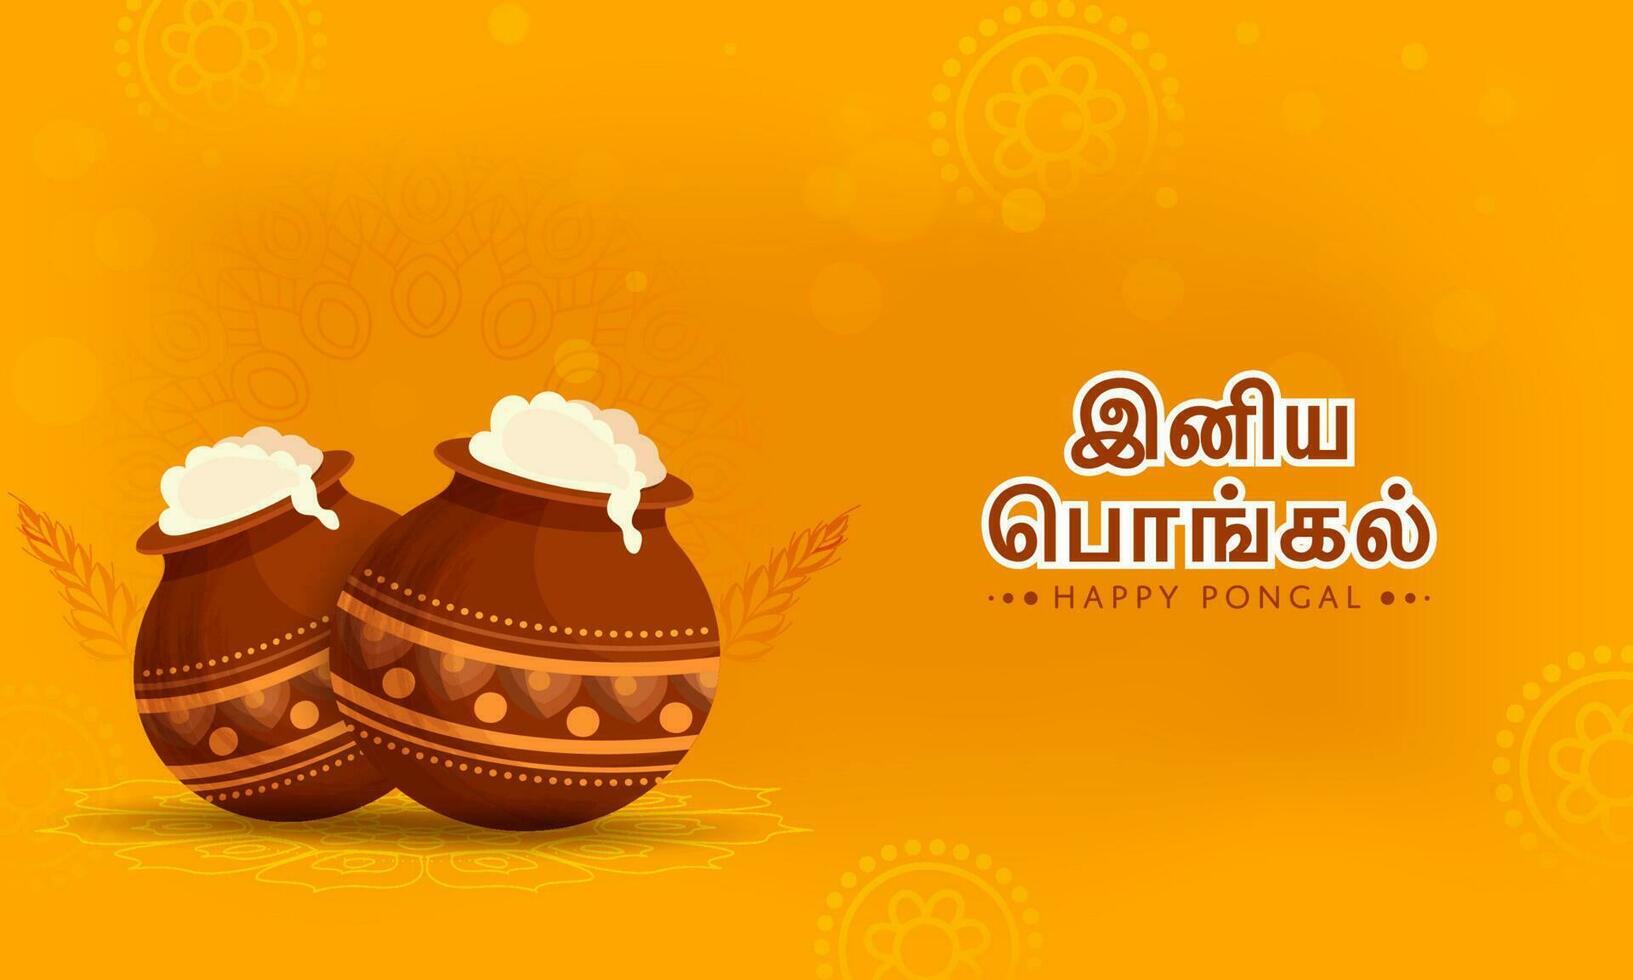 sticker stijl gelukkig pongal tekst geschreven in tamil taal met klei potten vol van pongali rijst, tarwe oor Aan oranje achtergrond. vector